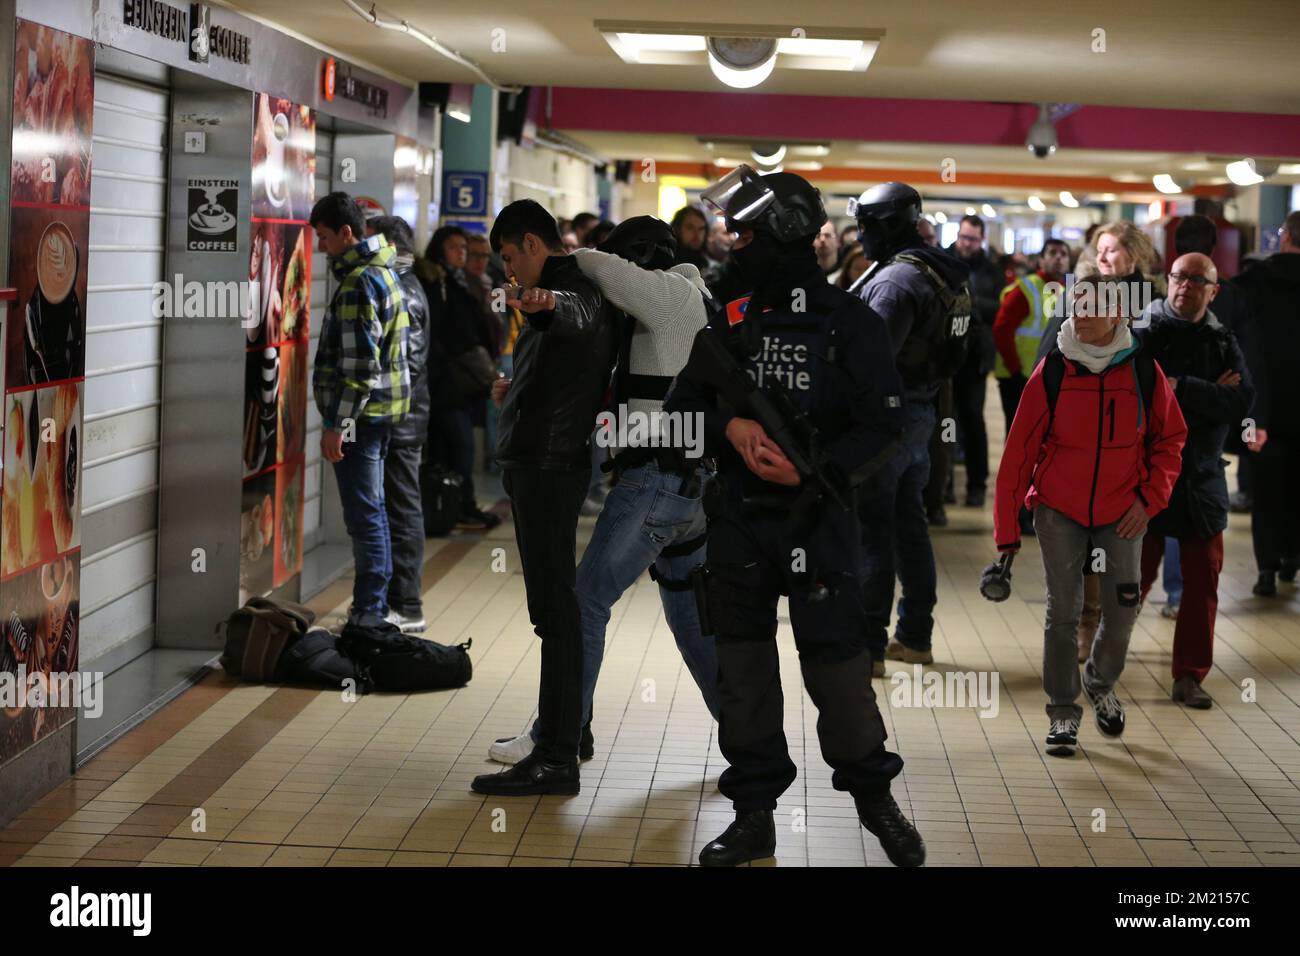 La polizia sta facendo ricerche su alcune persone all'interno della stazione nord (Gare du Nord - Noordstation) come le stazioni vengono riaperte con misure di sicurezza elevata dopo gli attacchi terroristici di oggi, Martedì 22 marzo 2016. Foto Stock